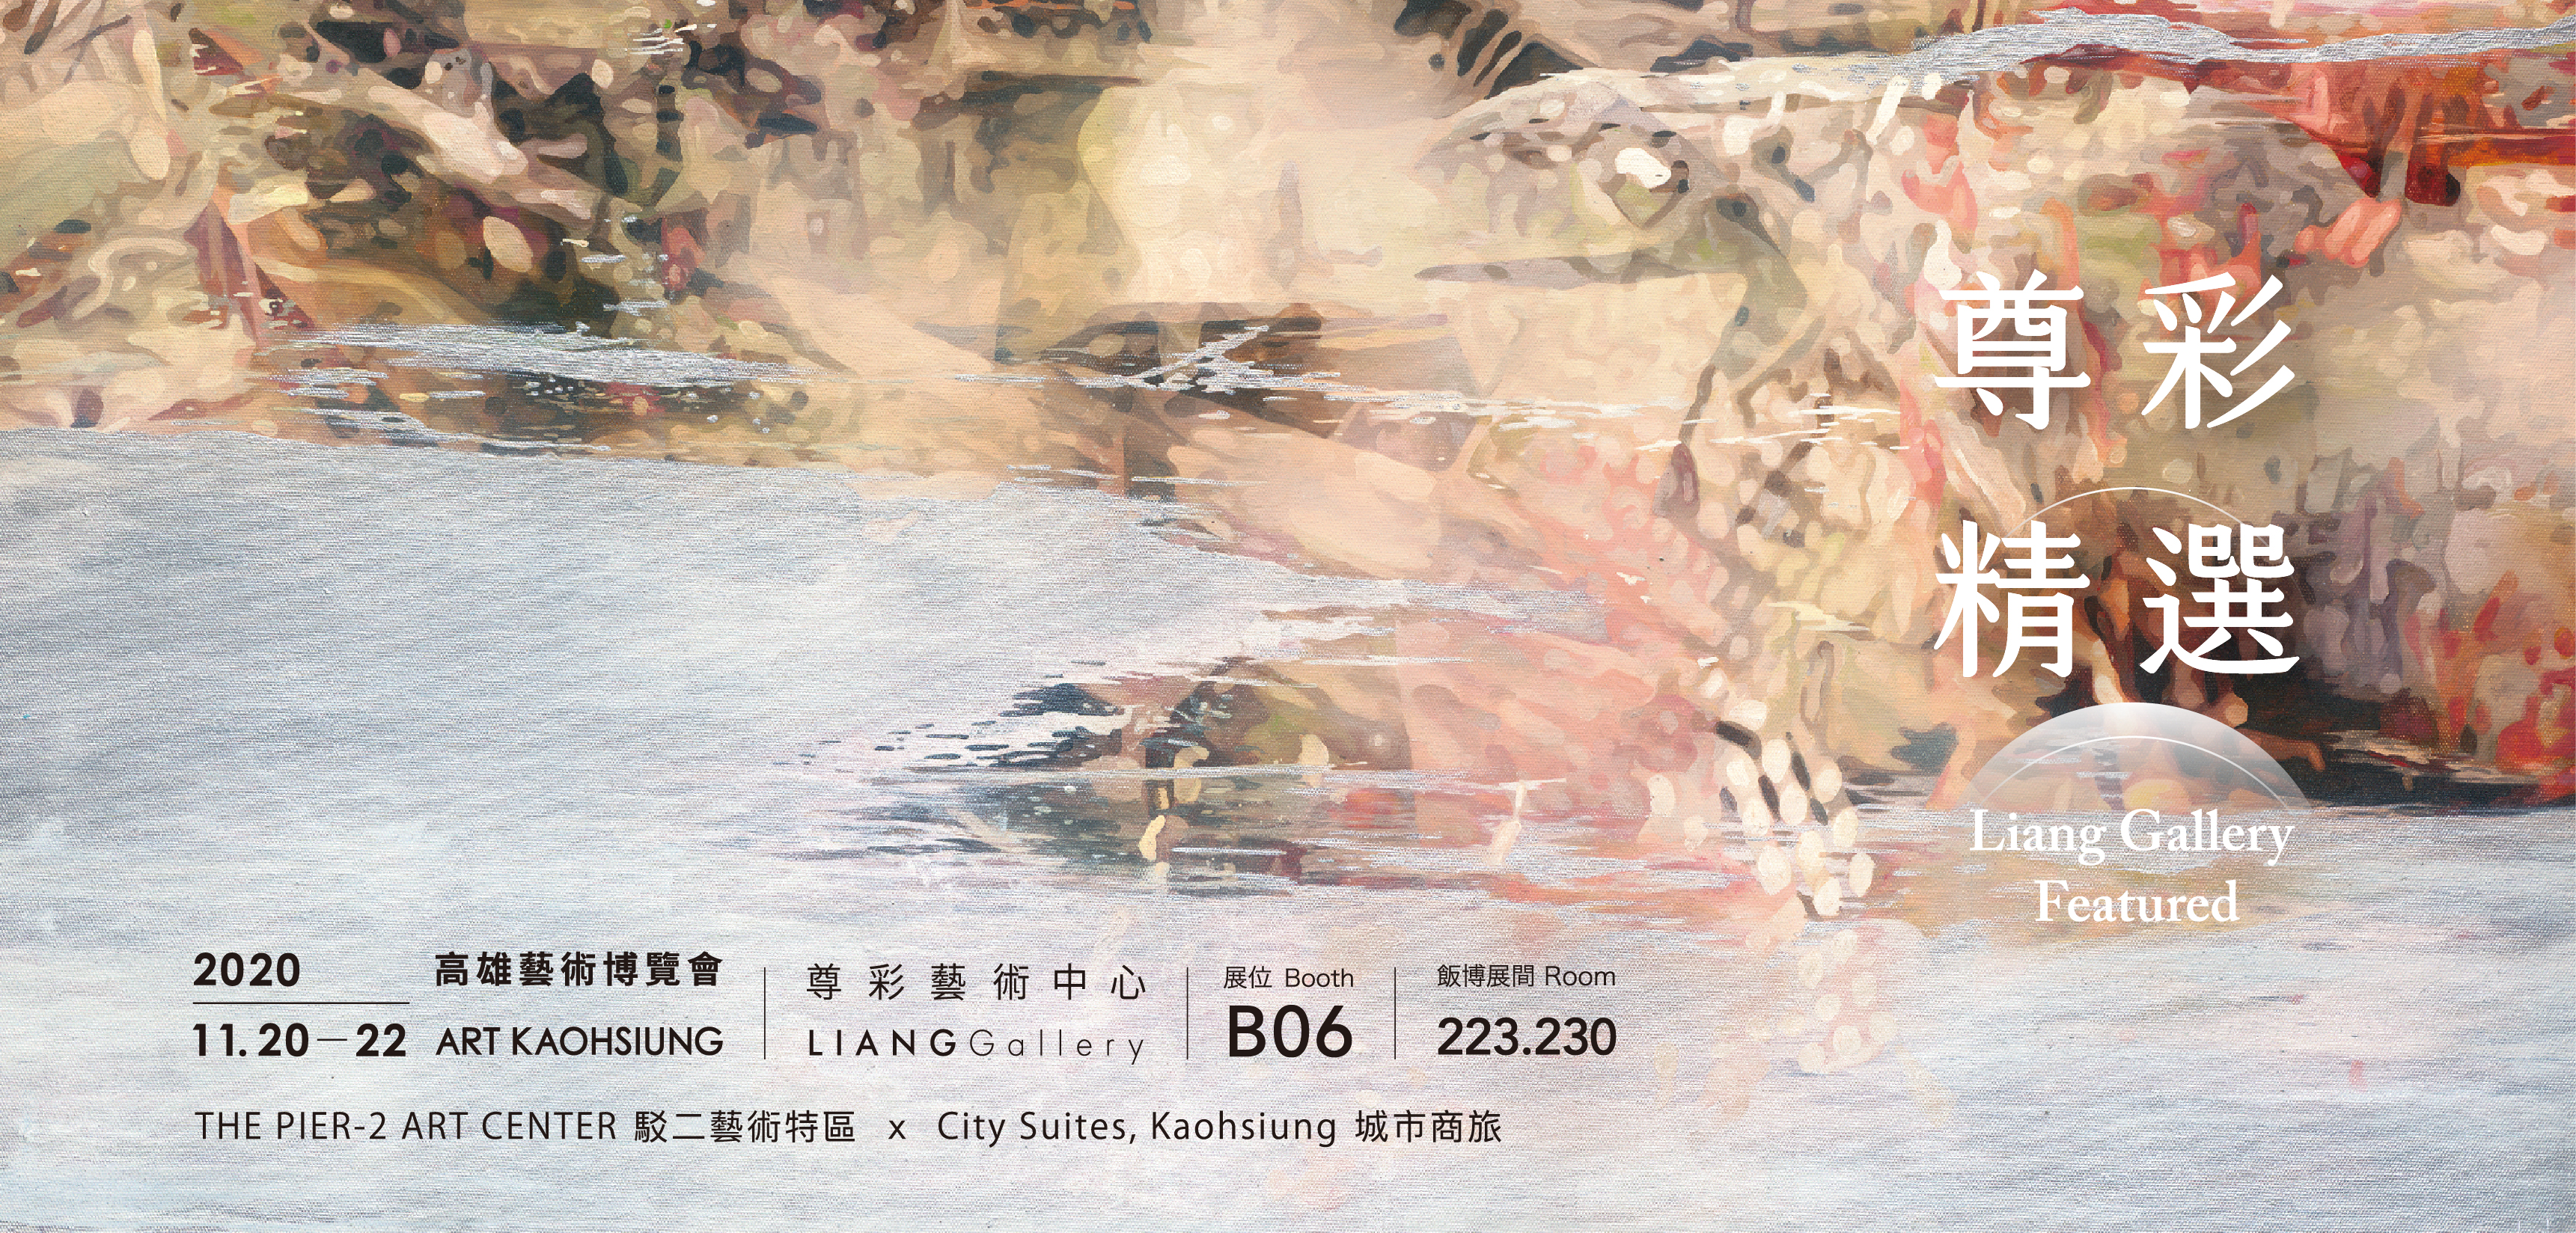 2020 Art Kaohsiung 